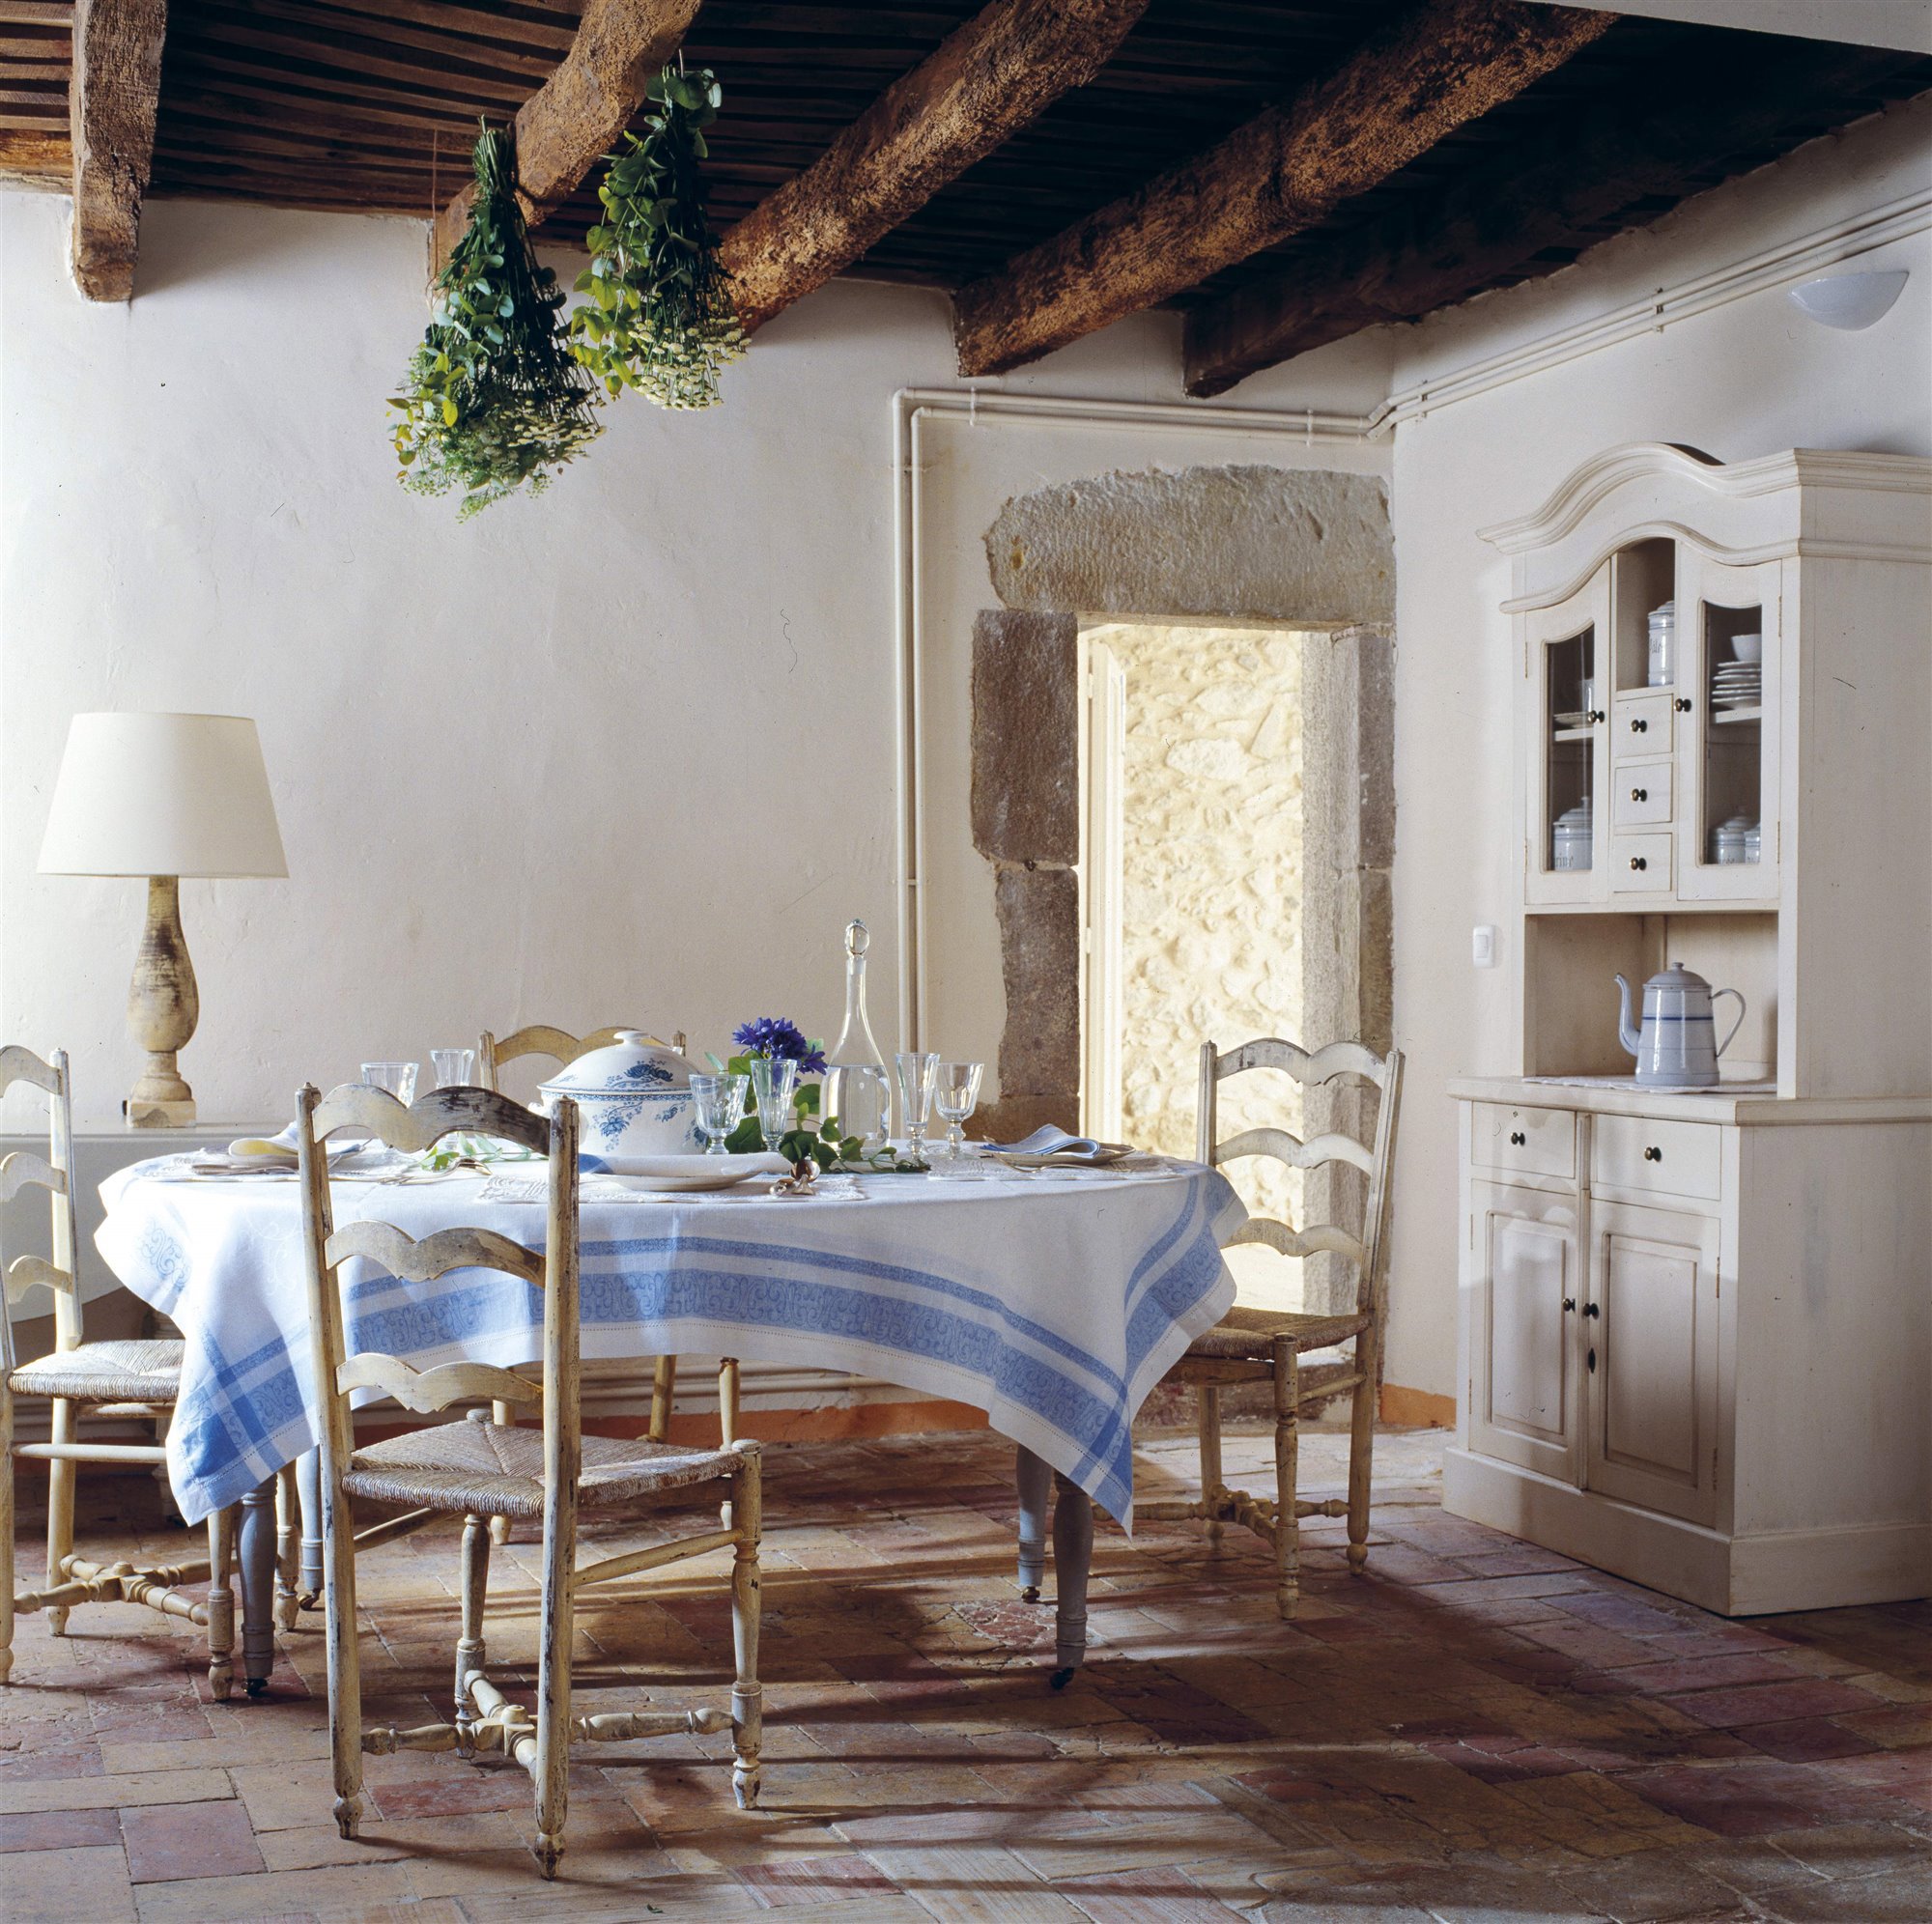 comedor rústico provenzal casa de campo con vigas de madera, mesa redonda de mantel blanco y azul, sillas envejecidas y mueble de vajilla